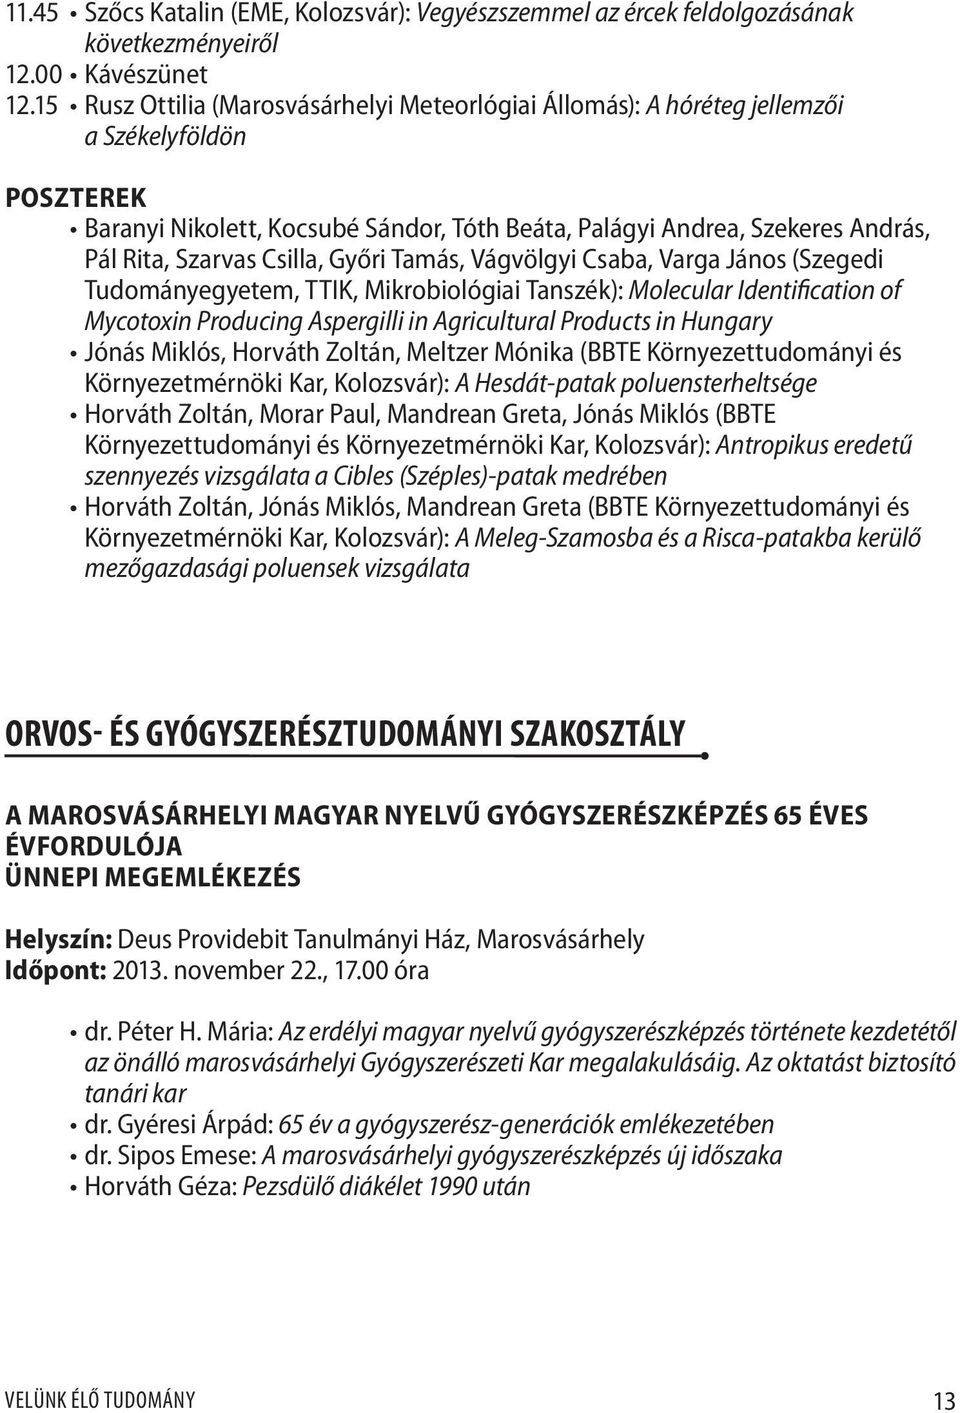 Csilla, Győri Tamás, Vágvölgyi Csaba, Varga János (Szegedi Tudományegyetem, TTIK, Mikrobiológiai Tanszék): Molecular Identification of Mycotoxin Producing Aspergilli in Agricultural Products in